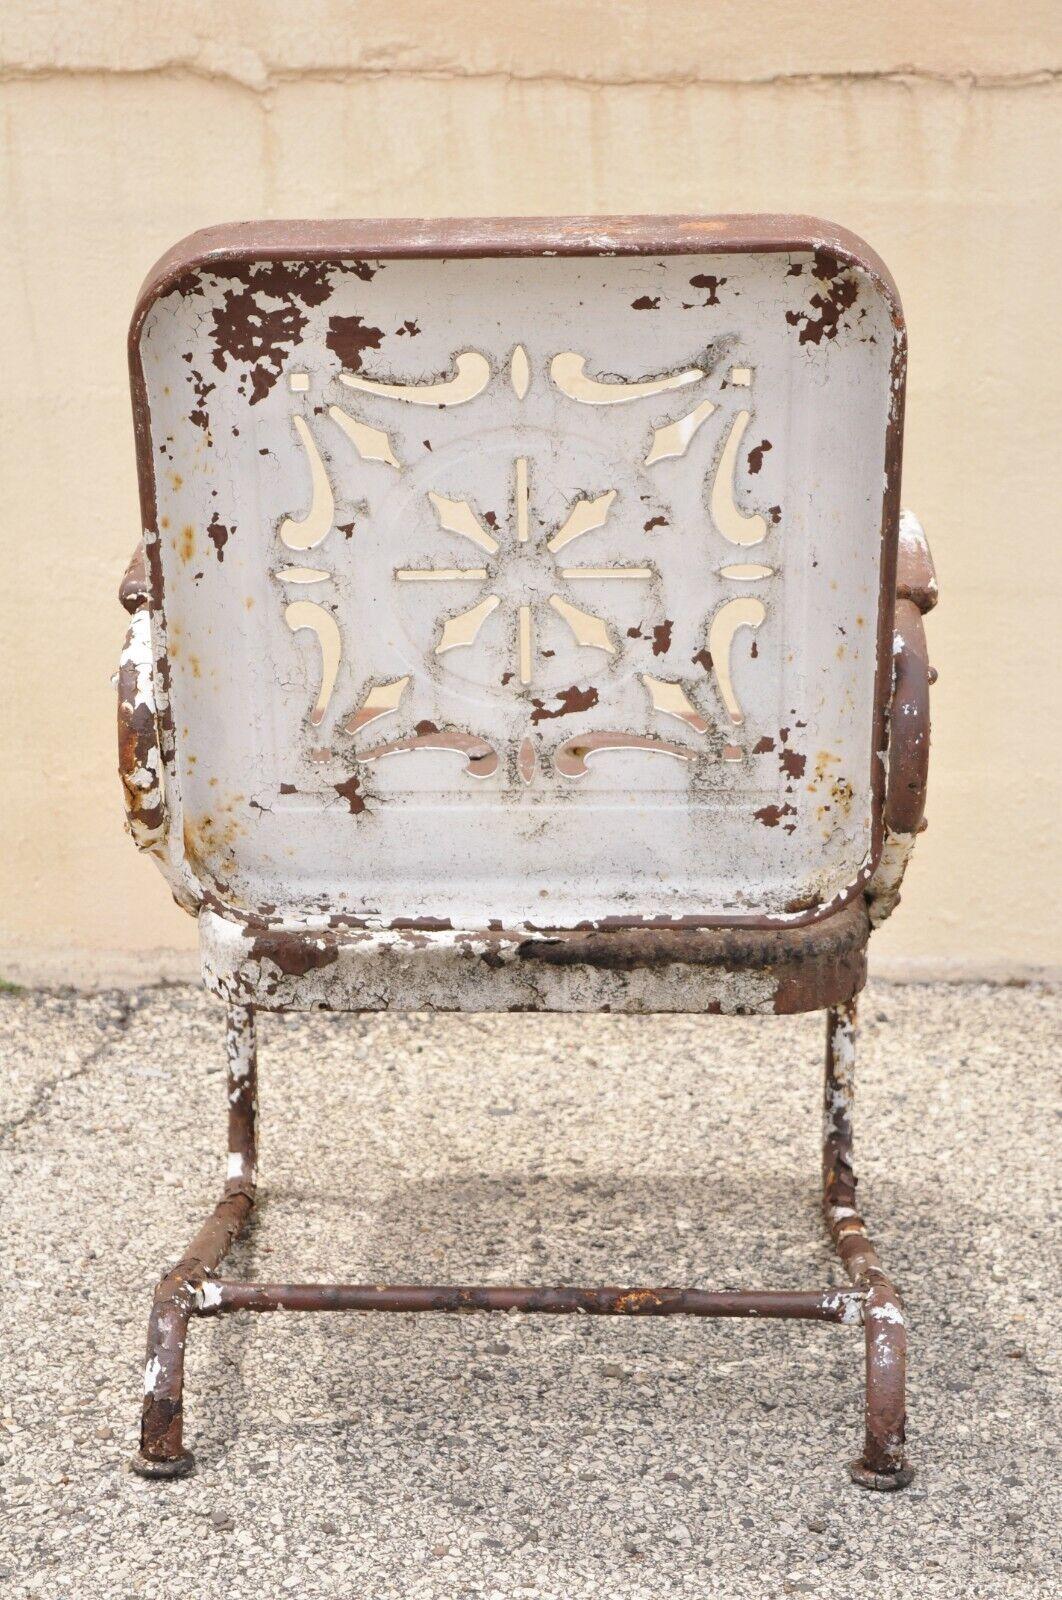 Antique Art Deco Basketweave Brown Distress Paint Bouncer Garden Lounge Chair For Sale 5